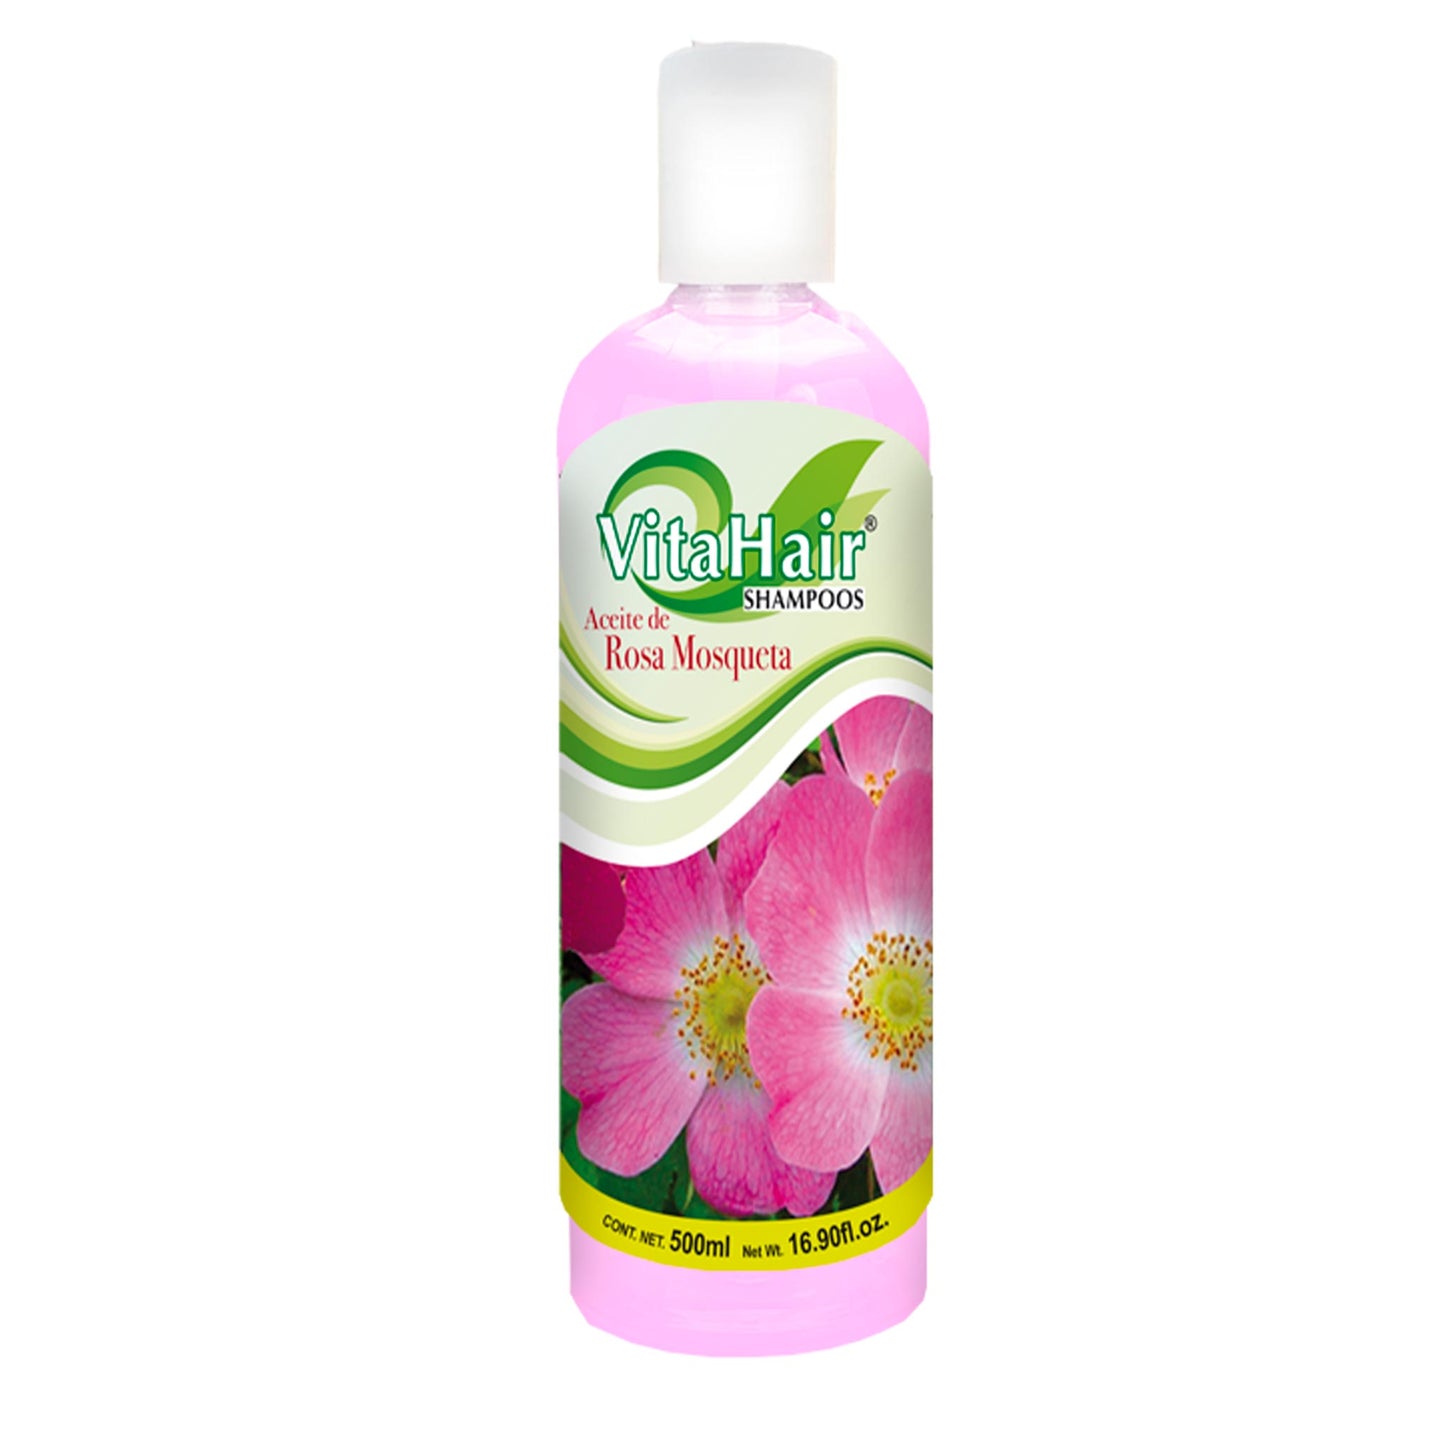 VITAHAIR ® shampoo de rosa mosqueta 500ml